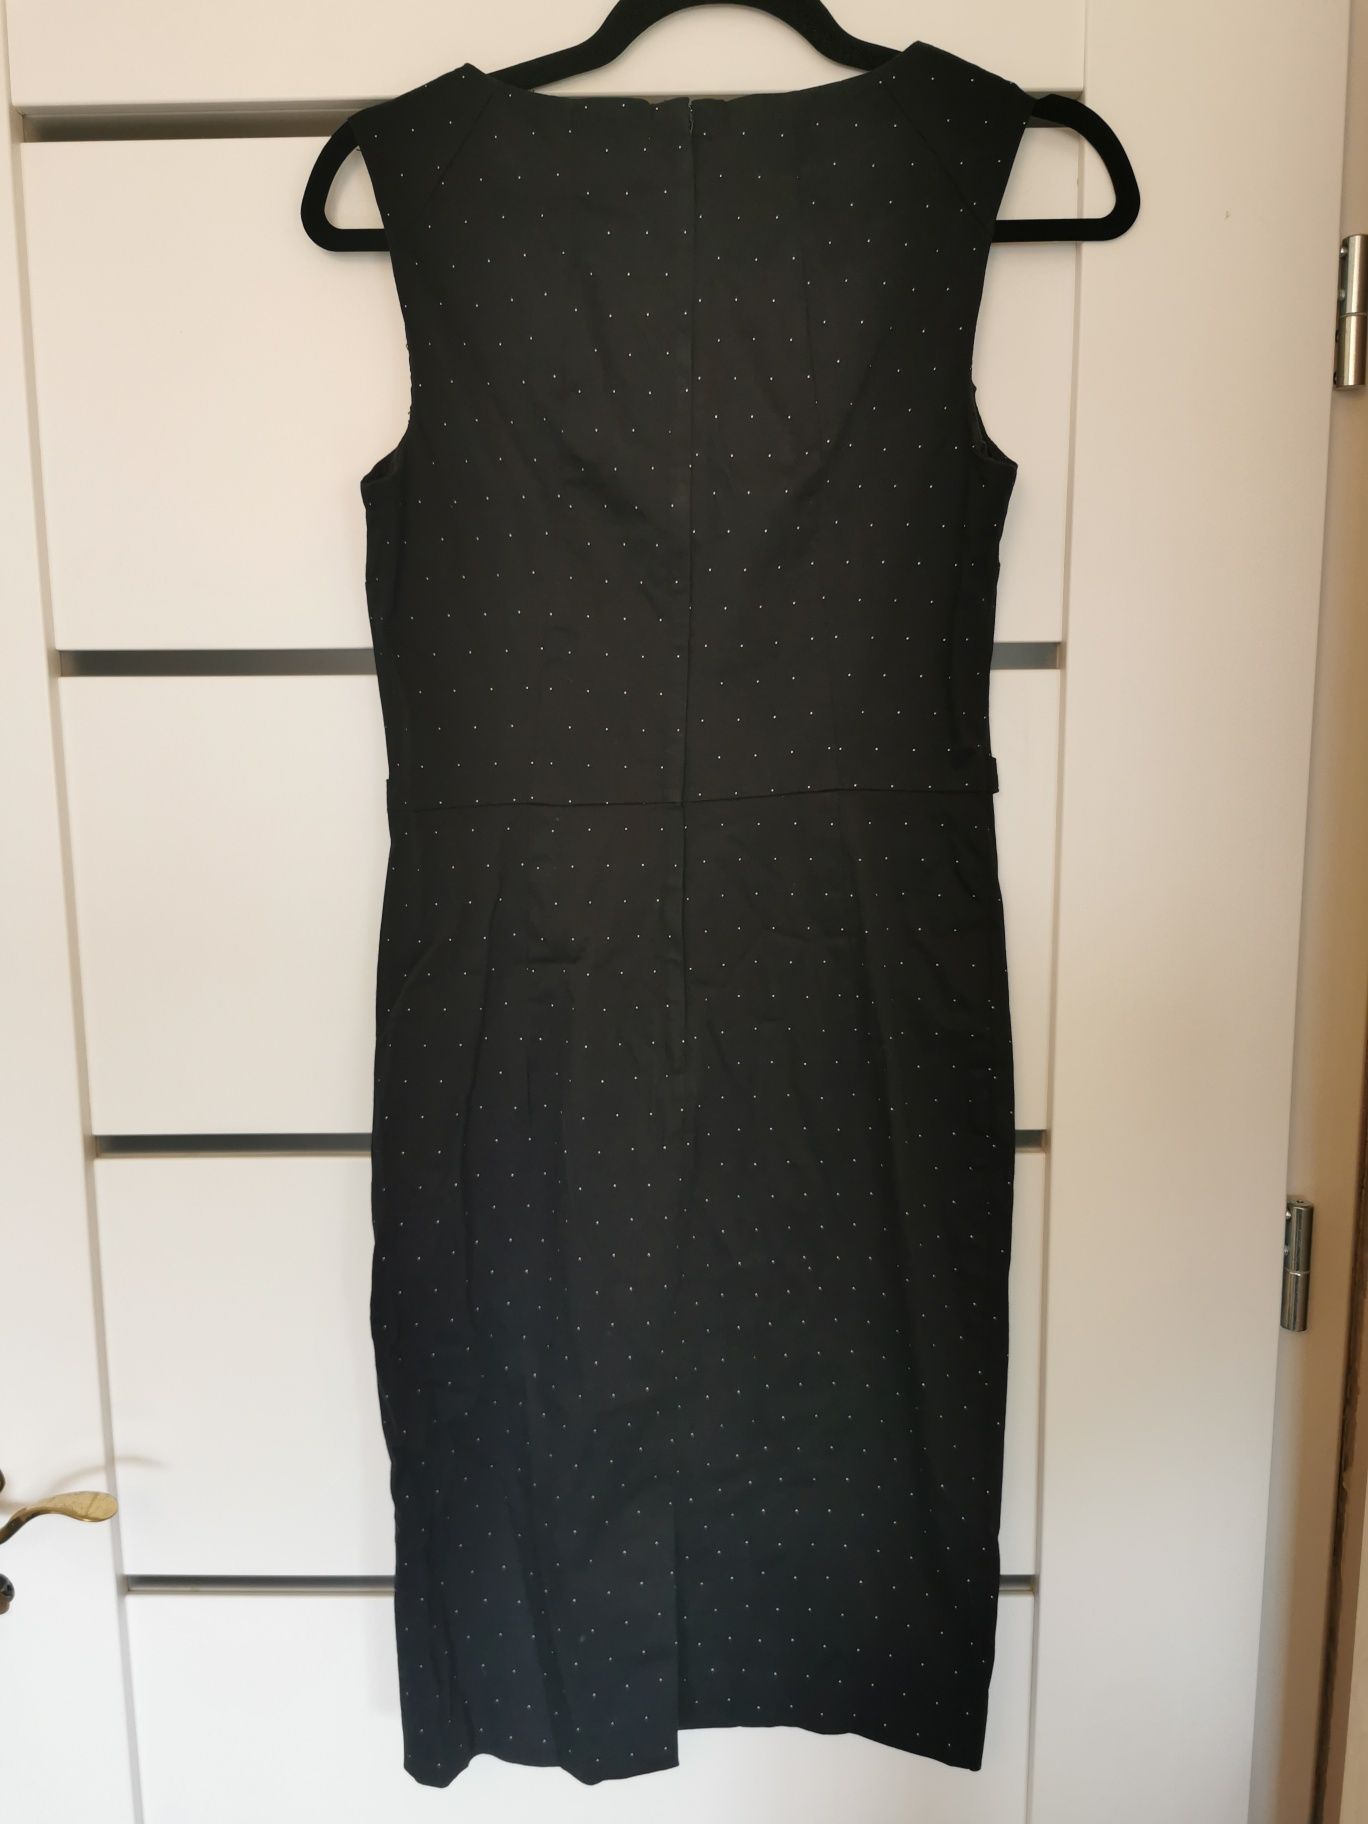 Sukienka Orsay, czarna w kropki rozmiar 36/S